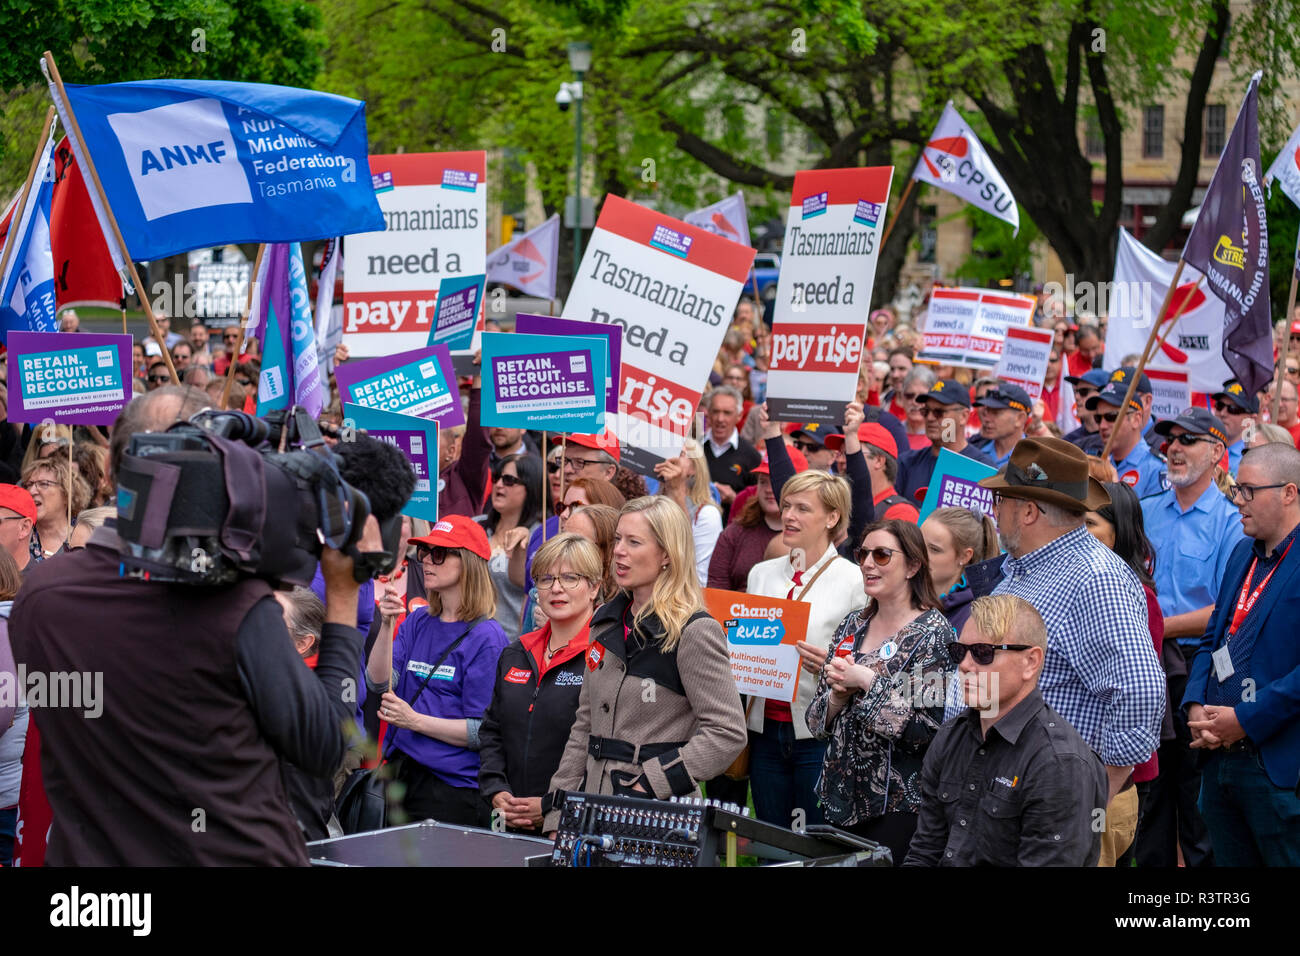 Les fonctionnaires, les enseignants et les travailleurs de la santé dans la région de Hobart Tasmanie qui protestaient devant le Parlement exigeant des augmentations de salaire. Banque D'Images